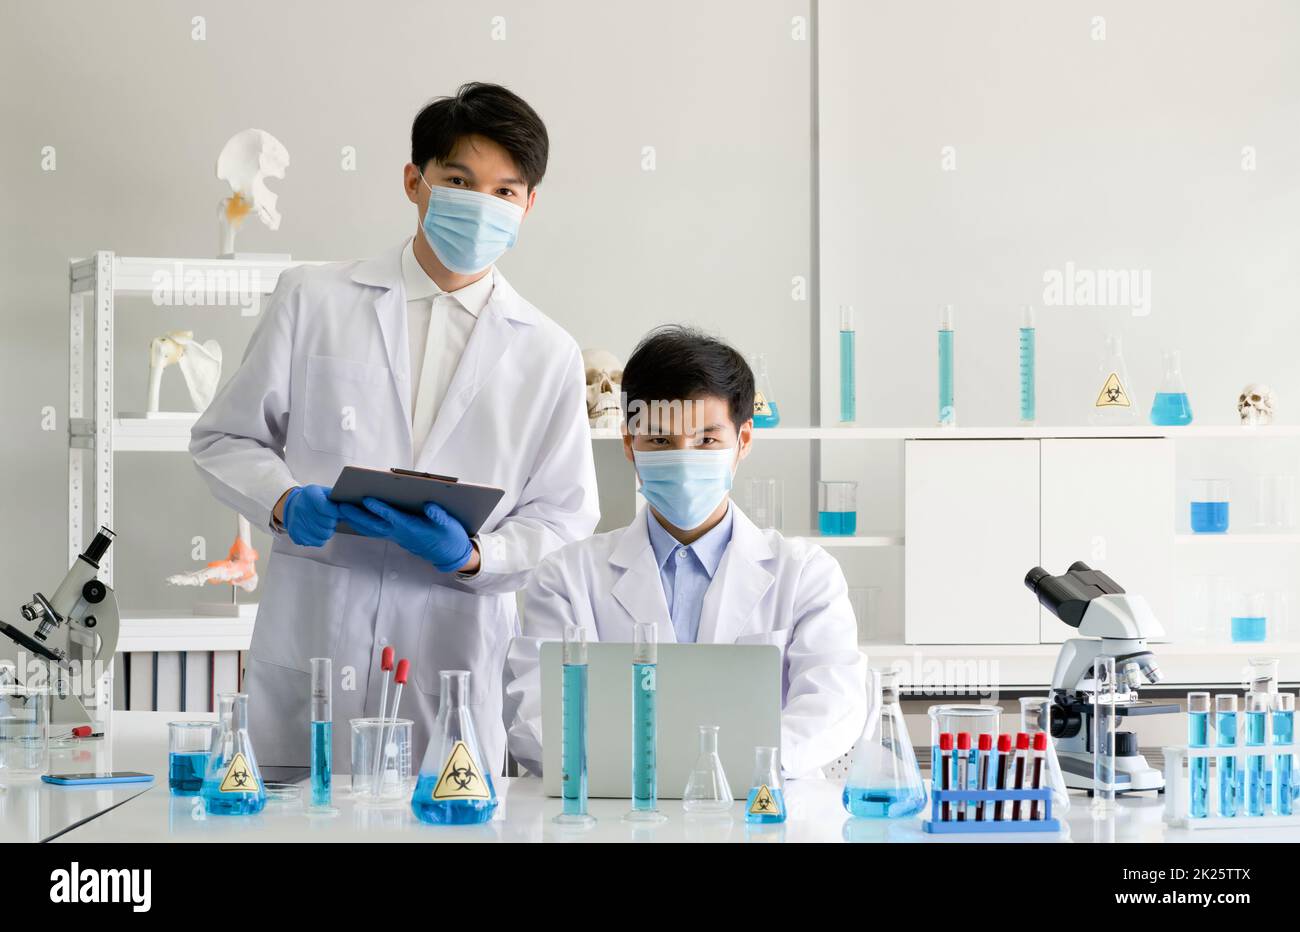 Zwei Wissenschaftler mit Gesichtsmaske und Kittel arbeiten im Labor. Omicron Strain Testing Process, Coronavirus Disease 2019. Stockfoto